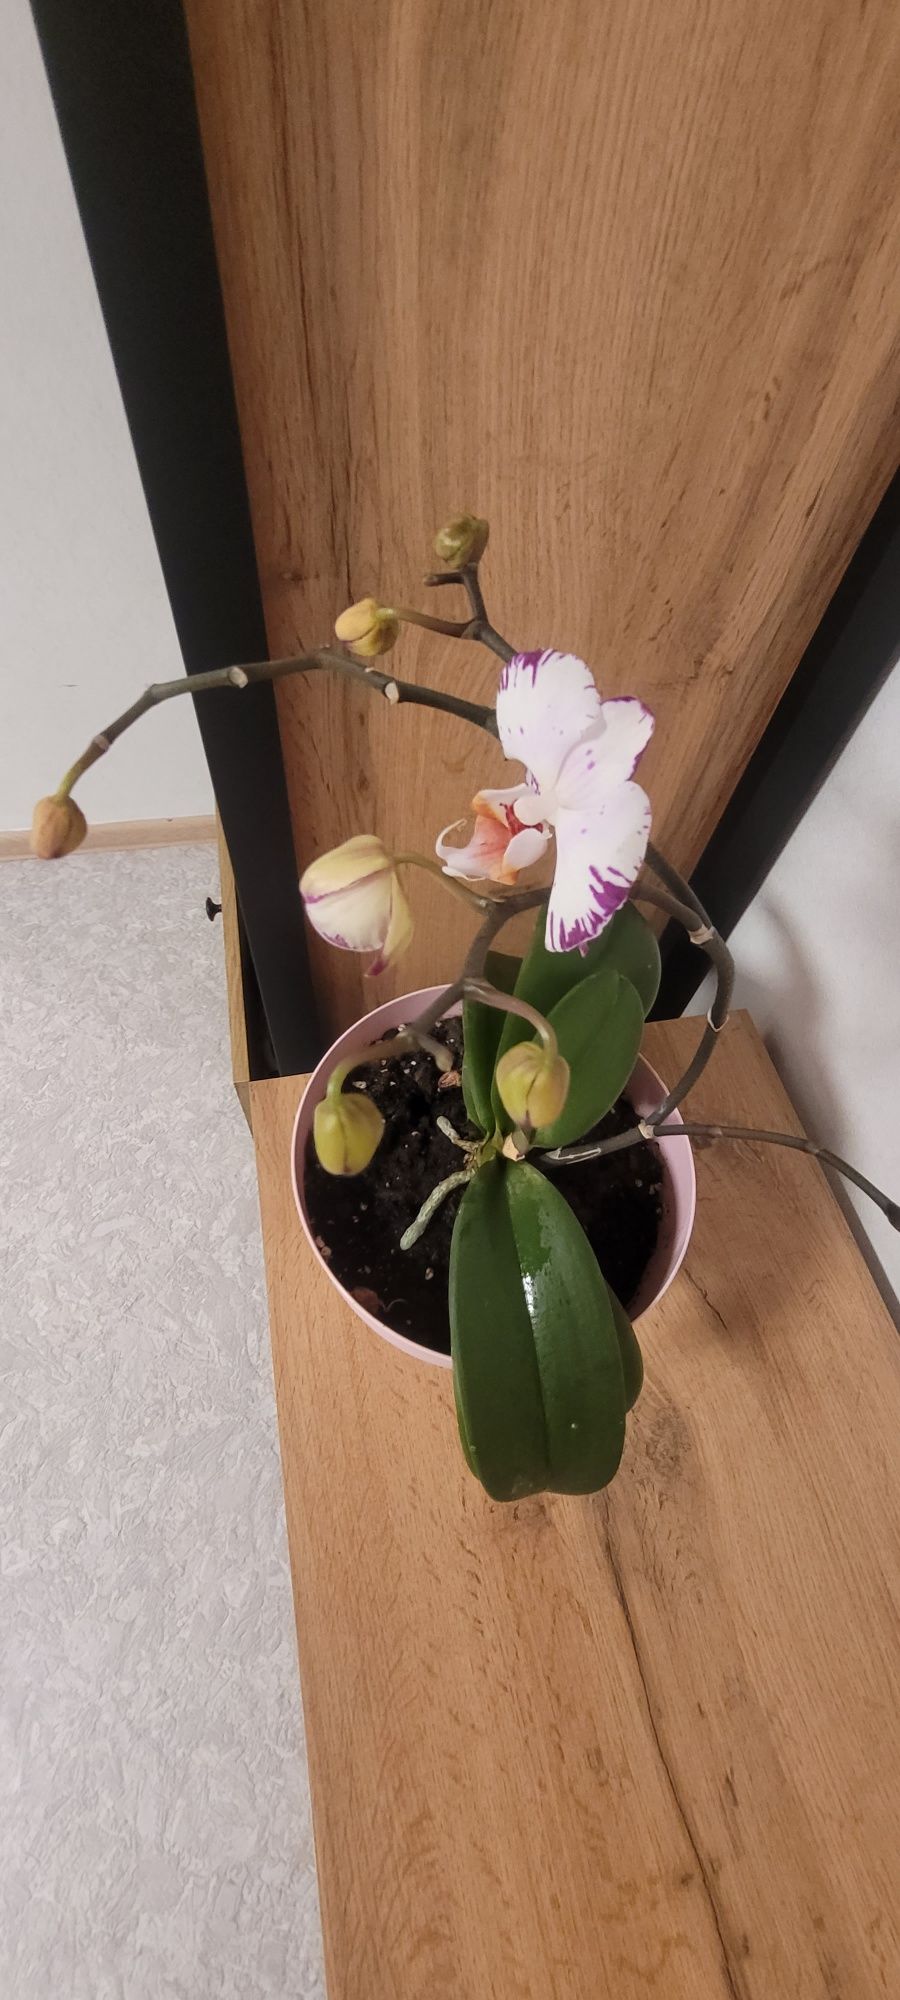 Продам орхидею
Тип
цветочная композиция
Вид
орхид